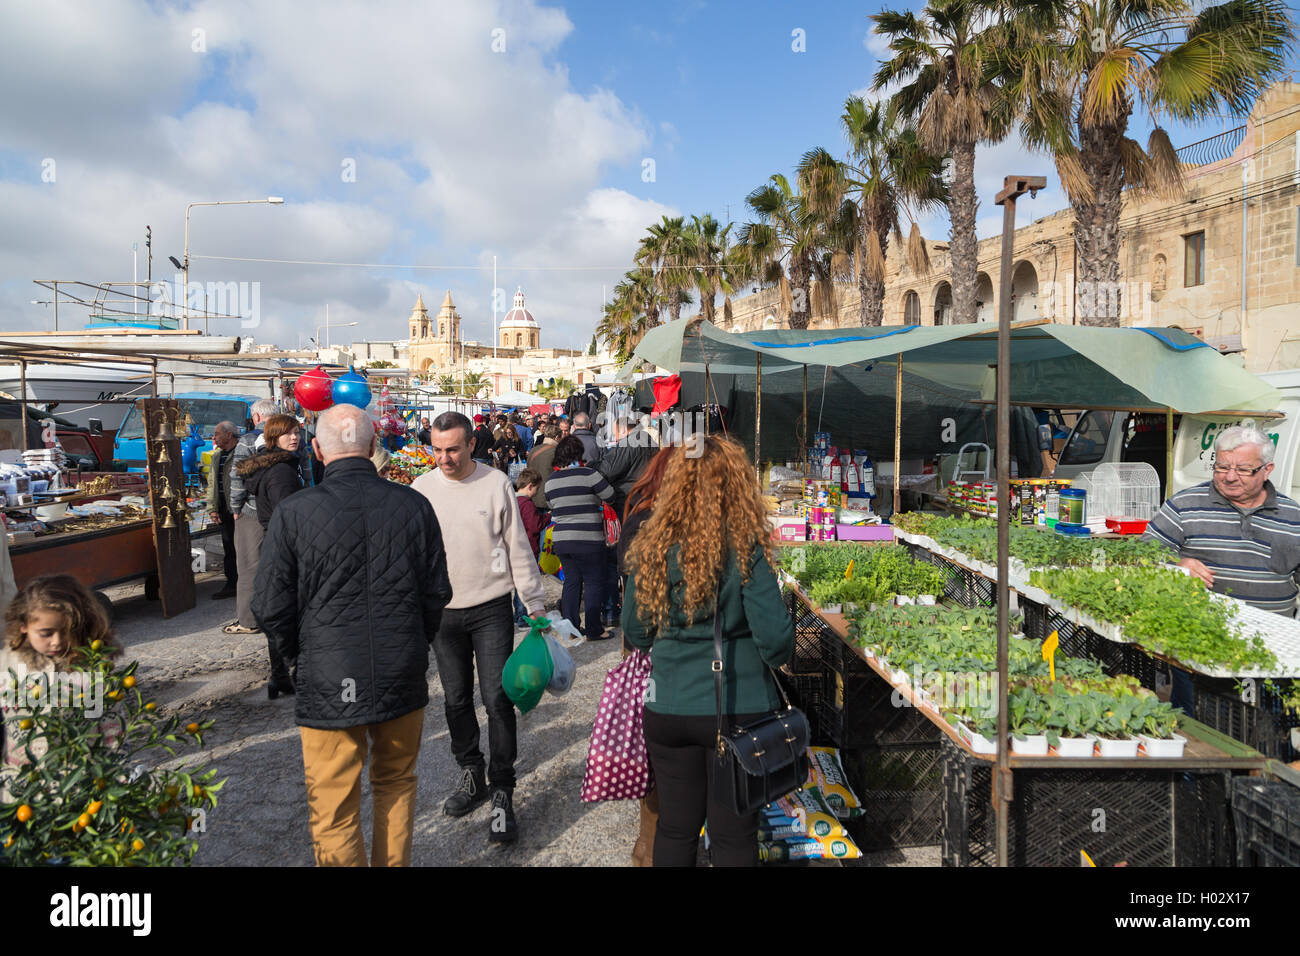 MARSAXLOKK, MALTA - JANUARY 11, 2015: People at Marsaxlokk market, one of the city's main features especially on sunday. Stock Photo